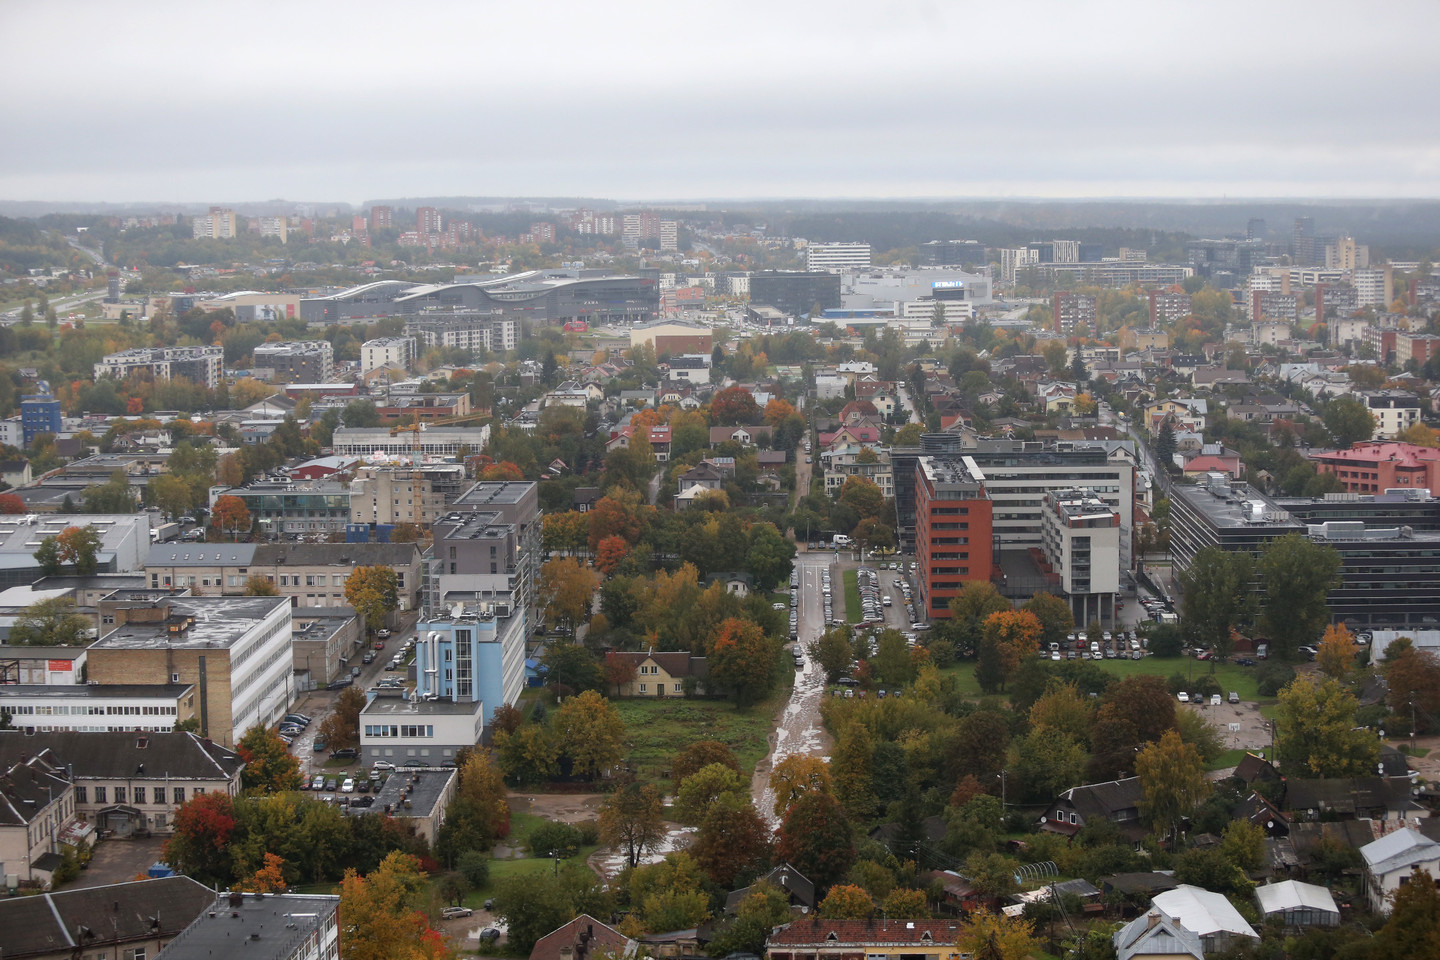 Vaizdų į sostinės panoramą kaina – vidutiniškai 3,5 tūkst. eurų už kv. metrą.<br> R.Danisevičiaus nuotr.